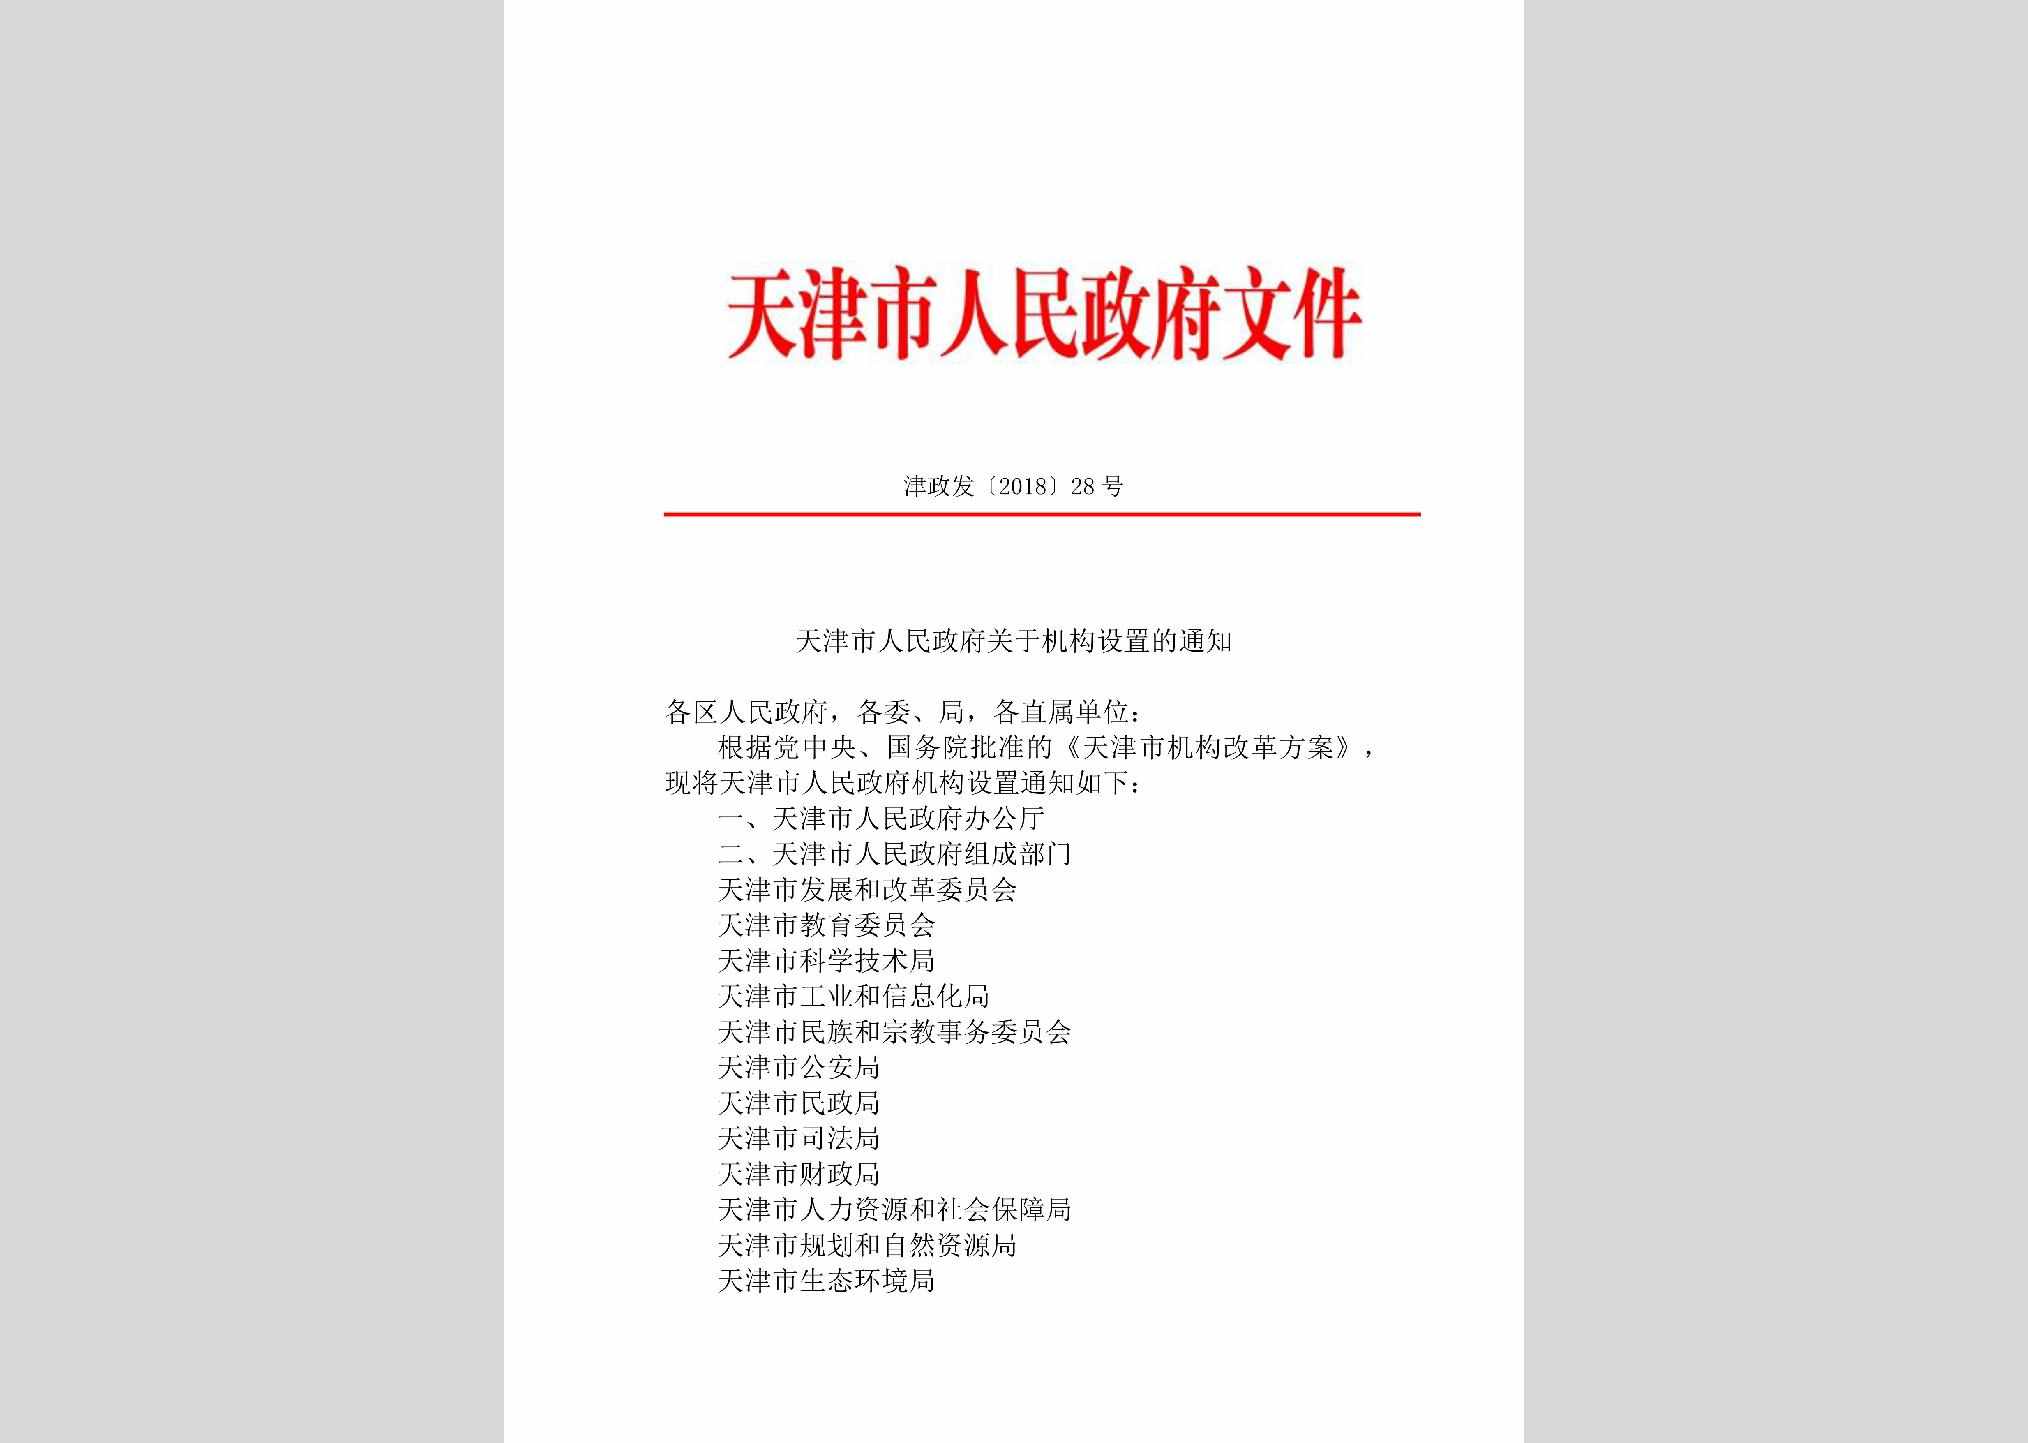 津政发[2018]28号：天津市人民政府关于机构设置的通知